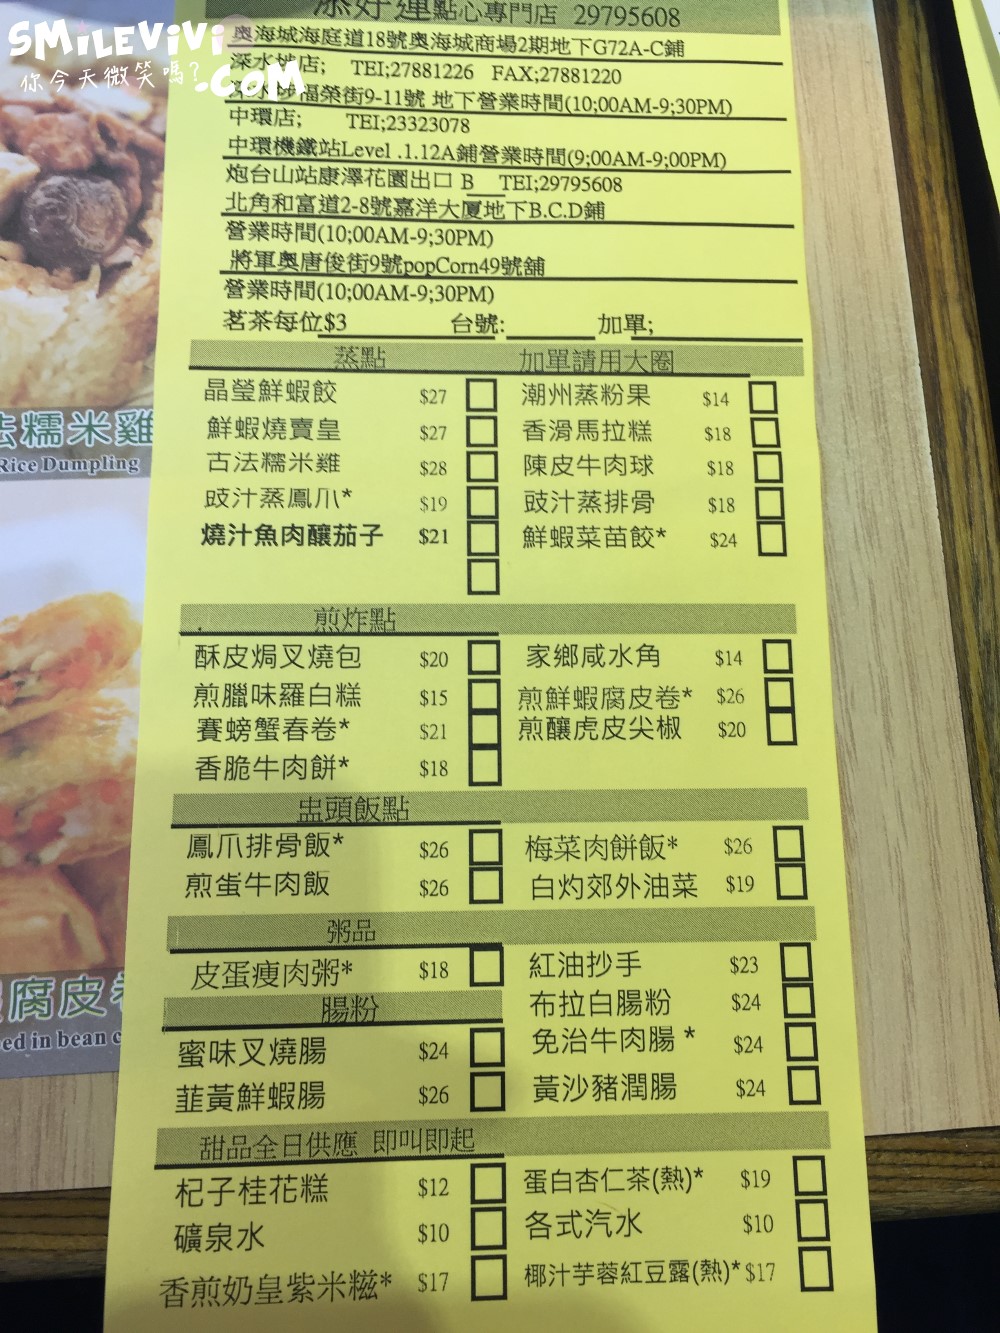 食記∥香港北角添好運點心(Tim Ho Wan)著名點心米其林1星酥皮焗叉燒包好吃 11 timhowan%20%2821%29.JPG%20 %2039481494520